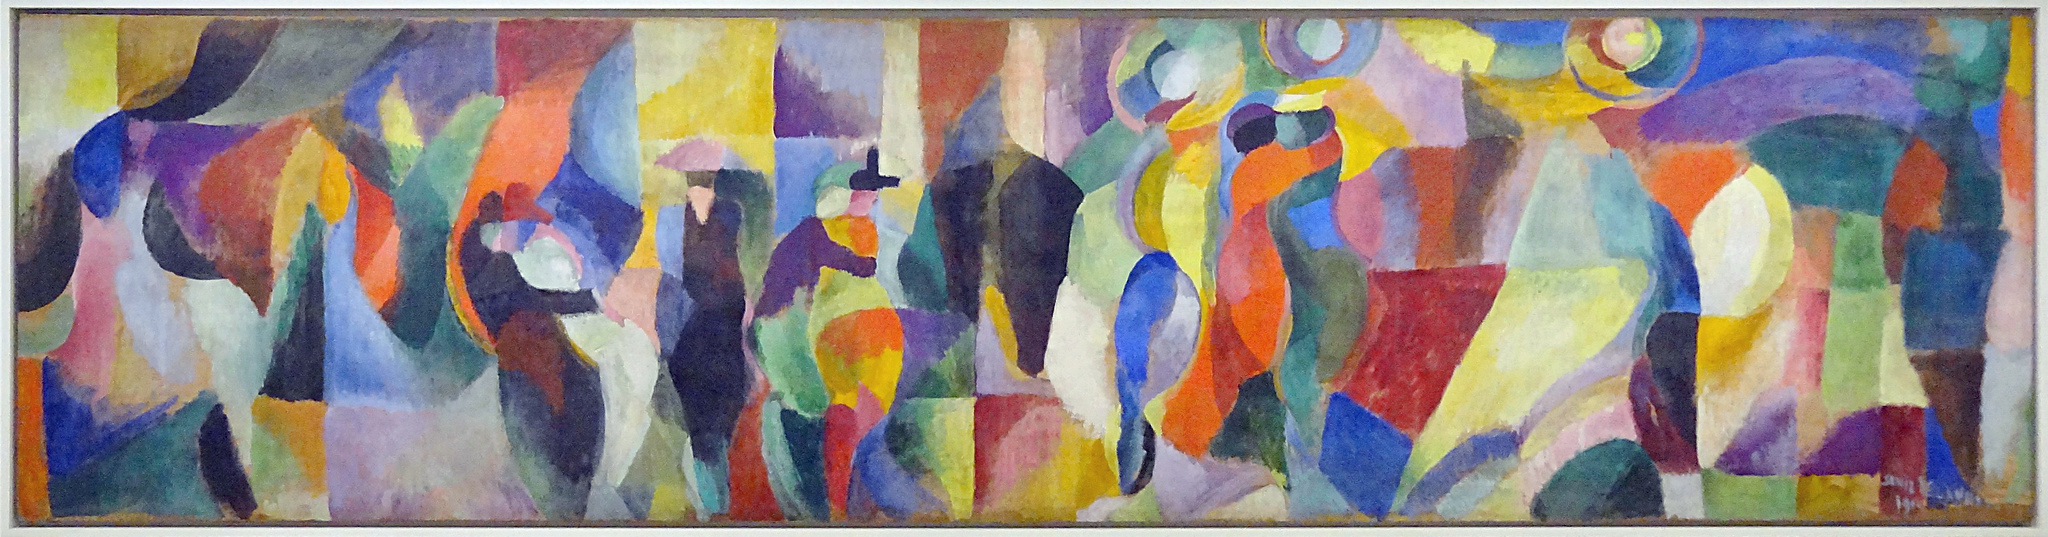 Sonia Delaunay, une vie en couleur